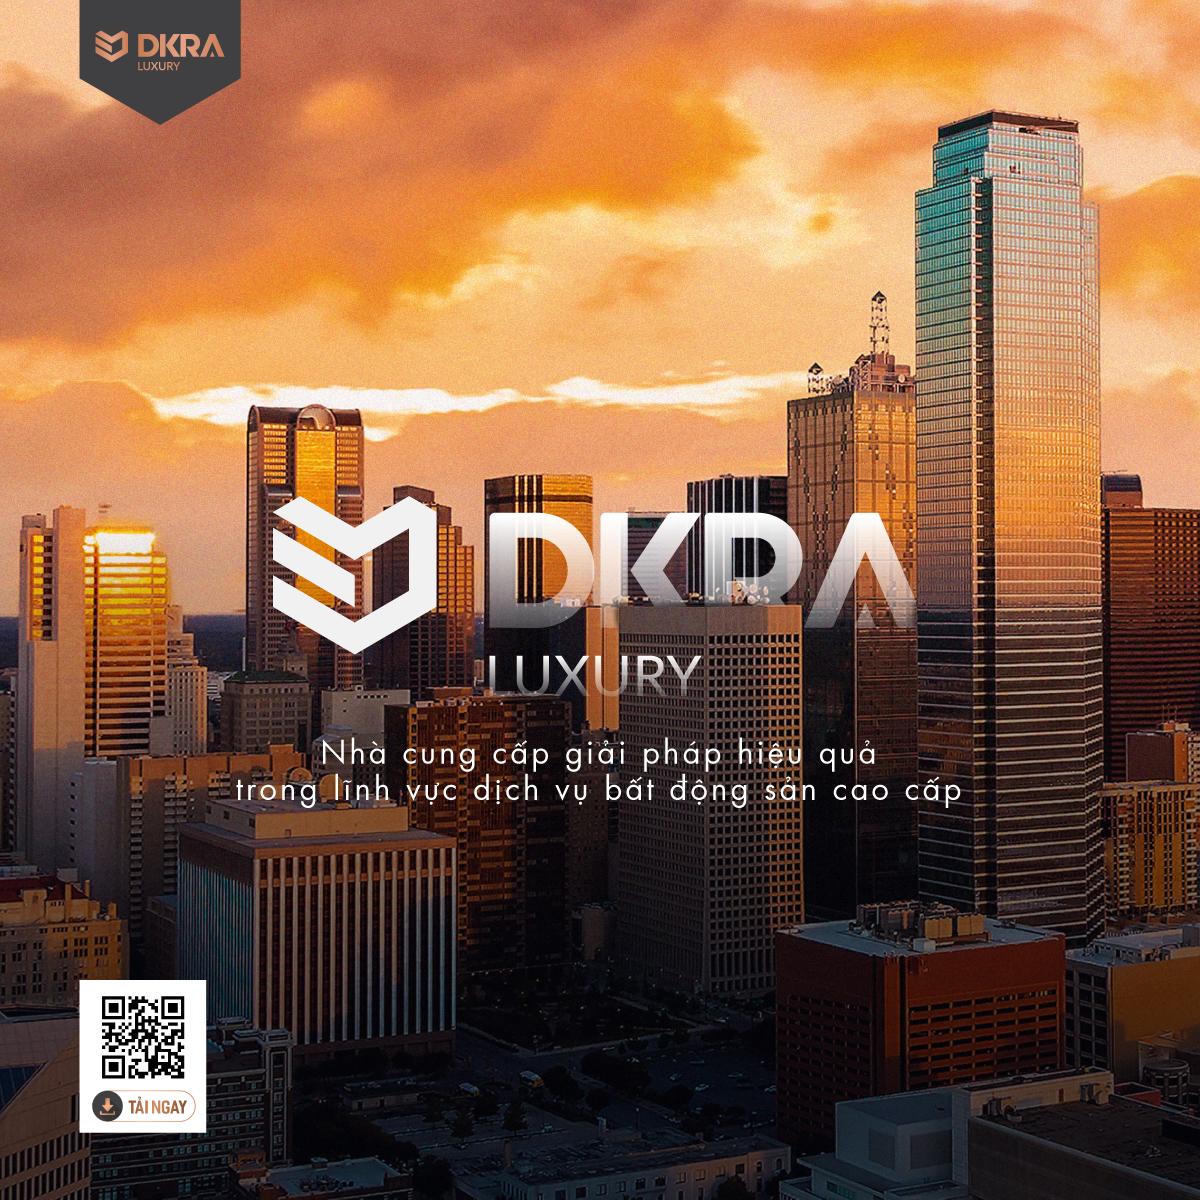 DKRA Luxury nhà cung cấp giải pháp hiệu quả trong lĩnh vực dịch vụ bất động sản cao cấp